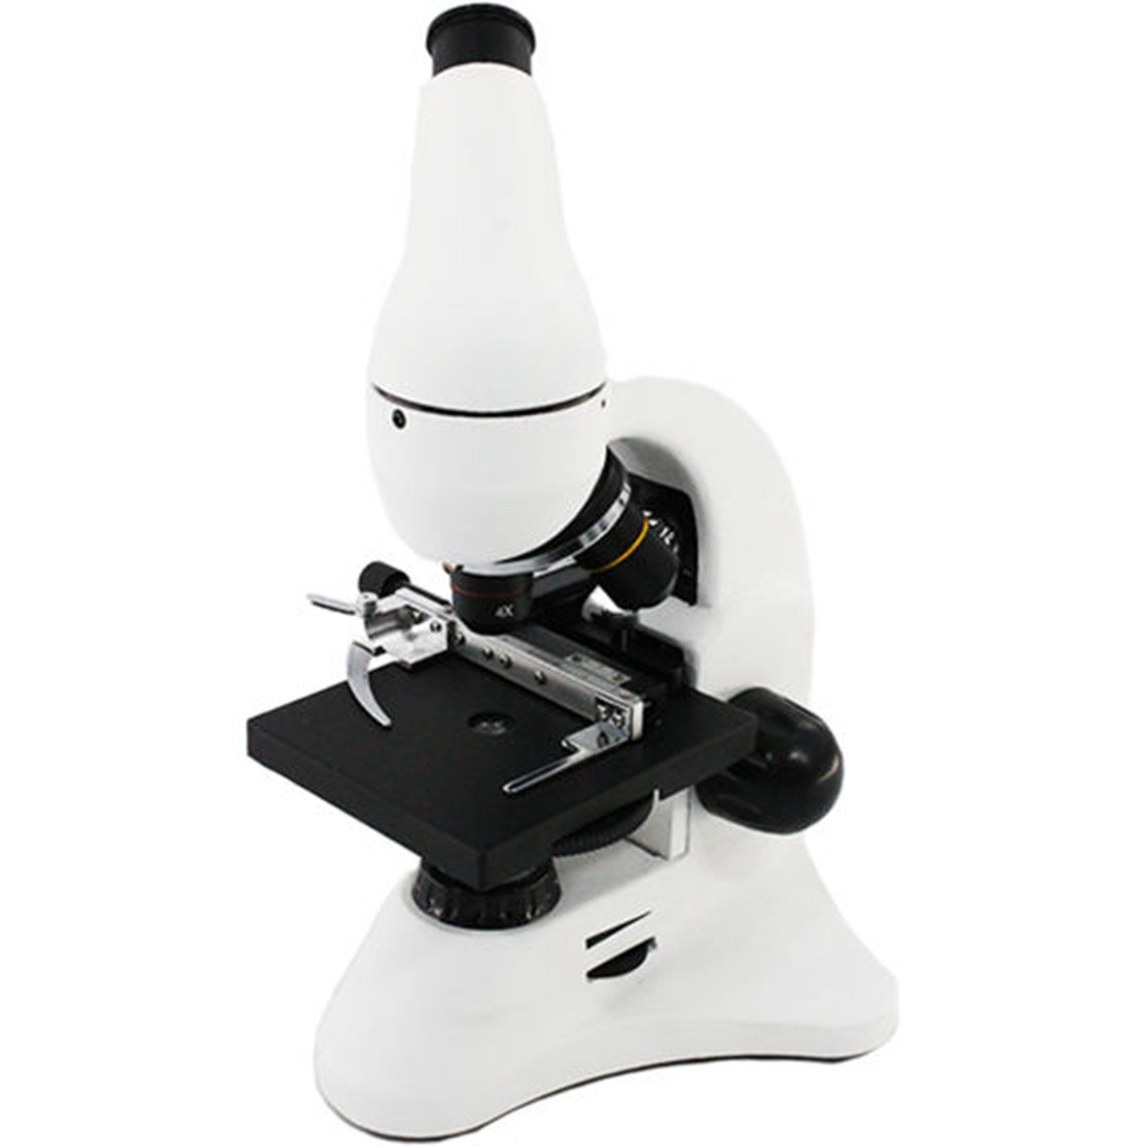 لیست قیمت میکروسکوپ  ترب